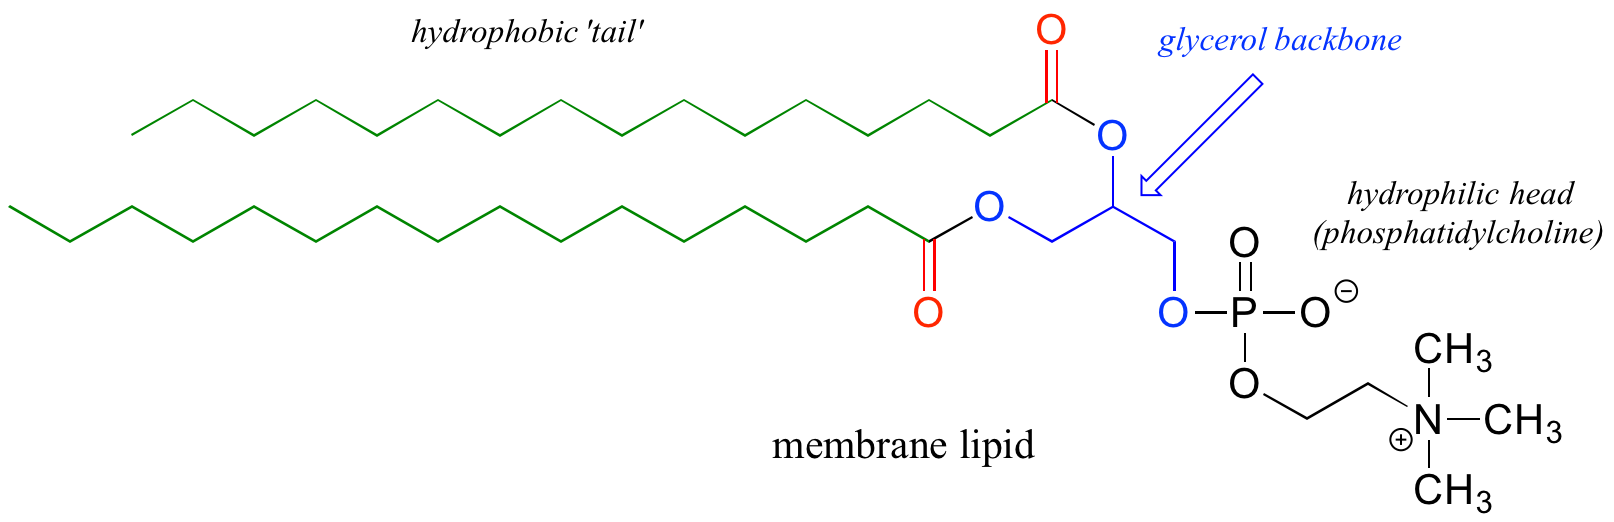 Estructura lipídica de membrana. Cola hidrofóbica: cadena de carbono de color verde. Estructura principal de glicerol: molécula de glicerol coloreada de azul. Cabeza hidrofílica: fosfatidilcolina unida a la columna vertebral de glicerol de color negro.